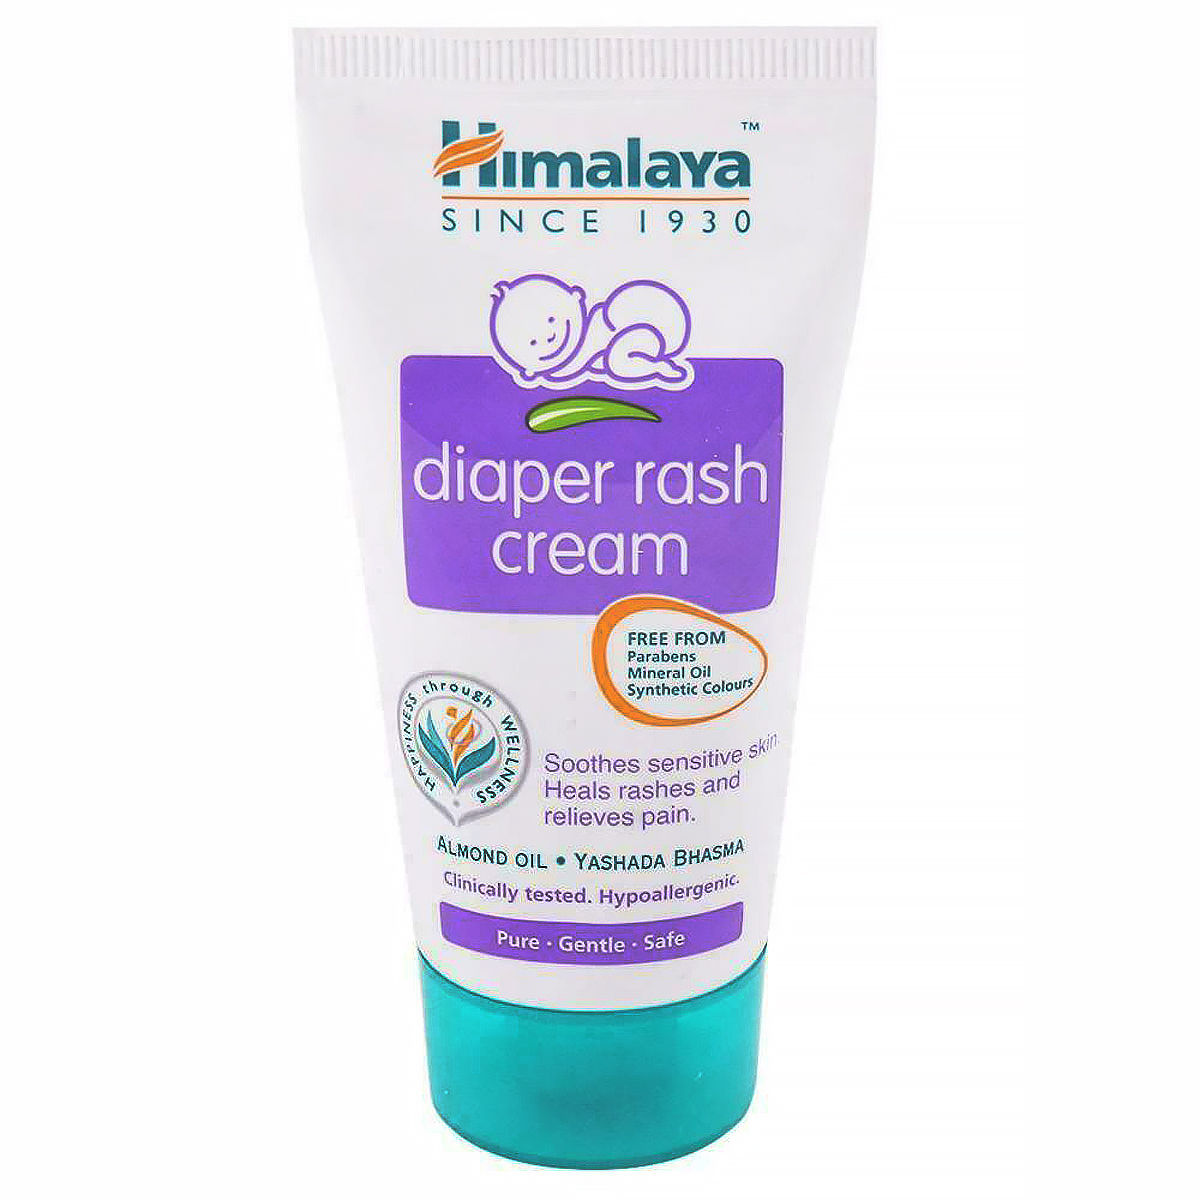 Buy Himalaya Diaper Rash Cream, 20 gm Online